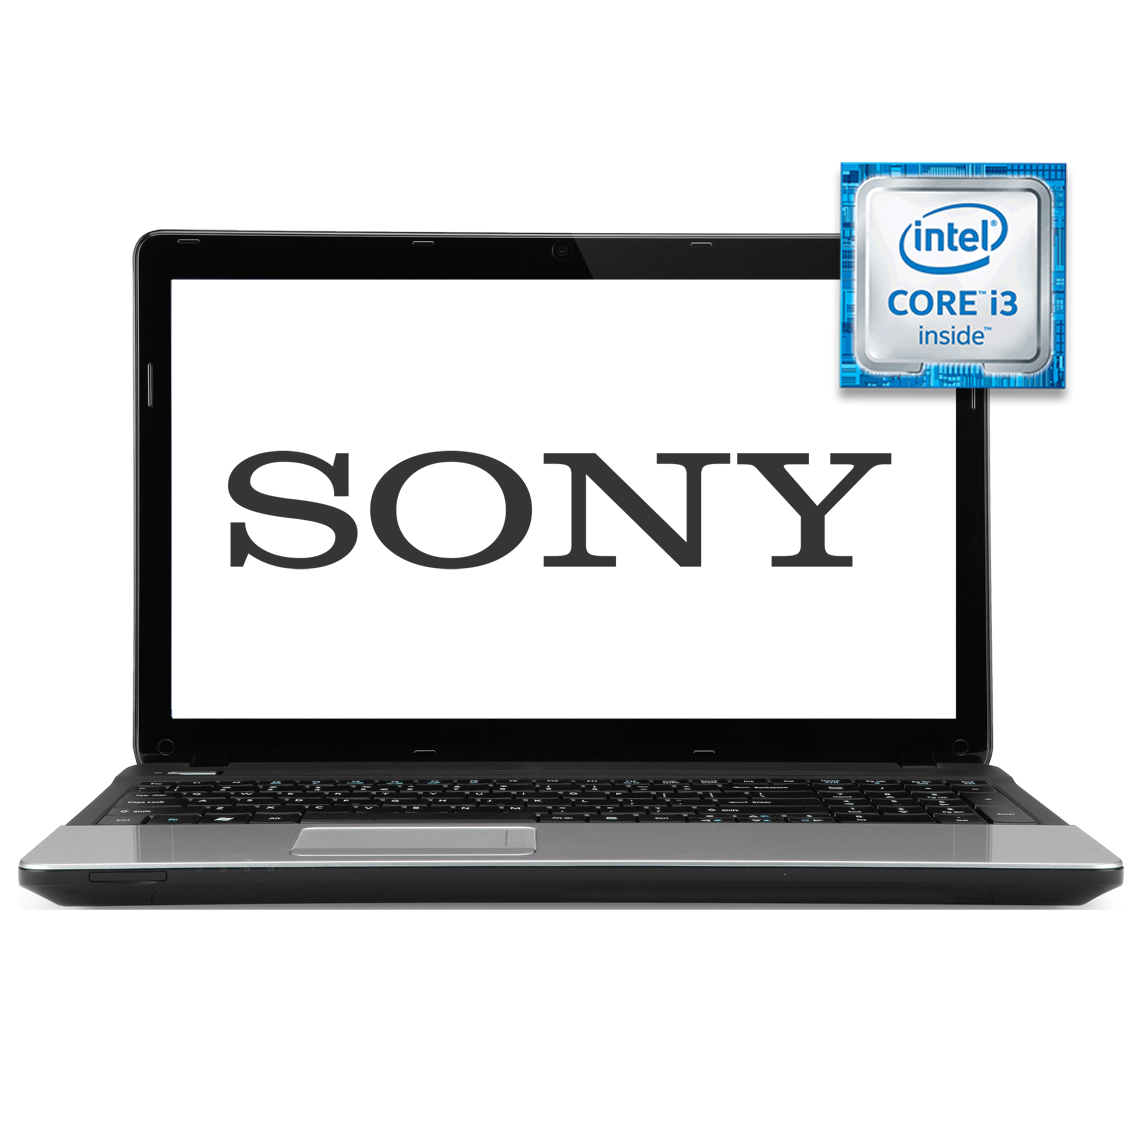 Sony - 15.6 inch Core i3 2nd Gen